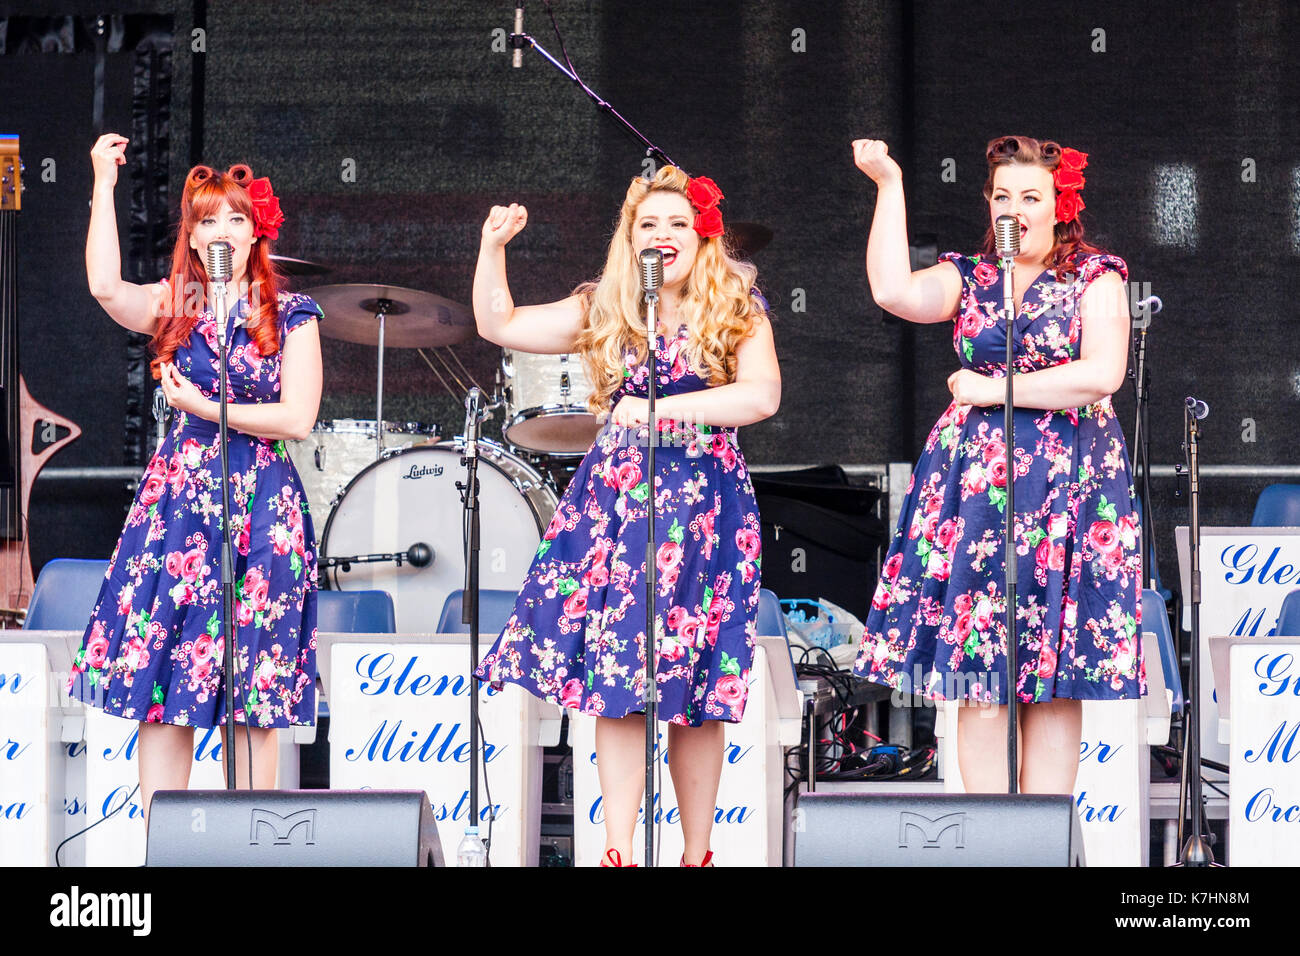 La Polka Dot Poupées, trio populaires qui chantent des chansons nostalgiques des années de guerre 1939-45, chanter sur scène à l'hommage aux années 40 week-end à Cran-gevrier. Vue avant d'entre eux debout chantant en face de microphones. Banque D'Images